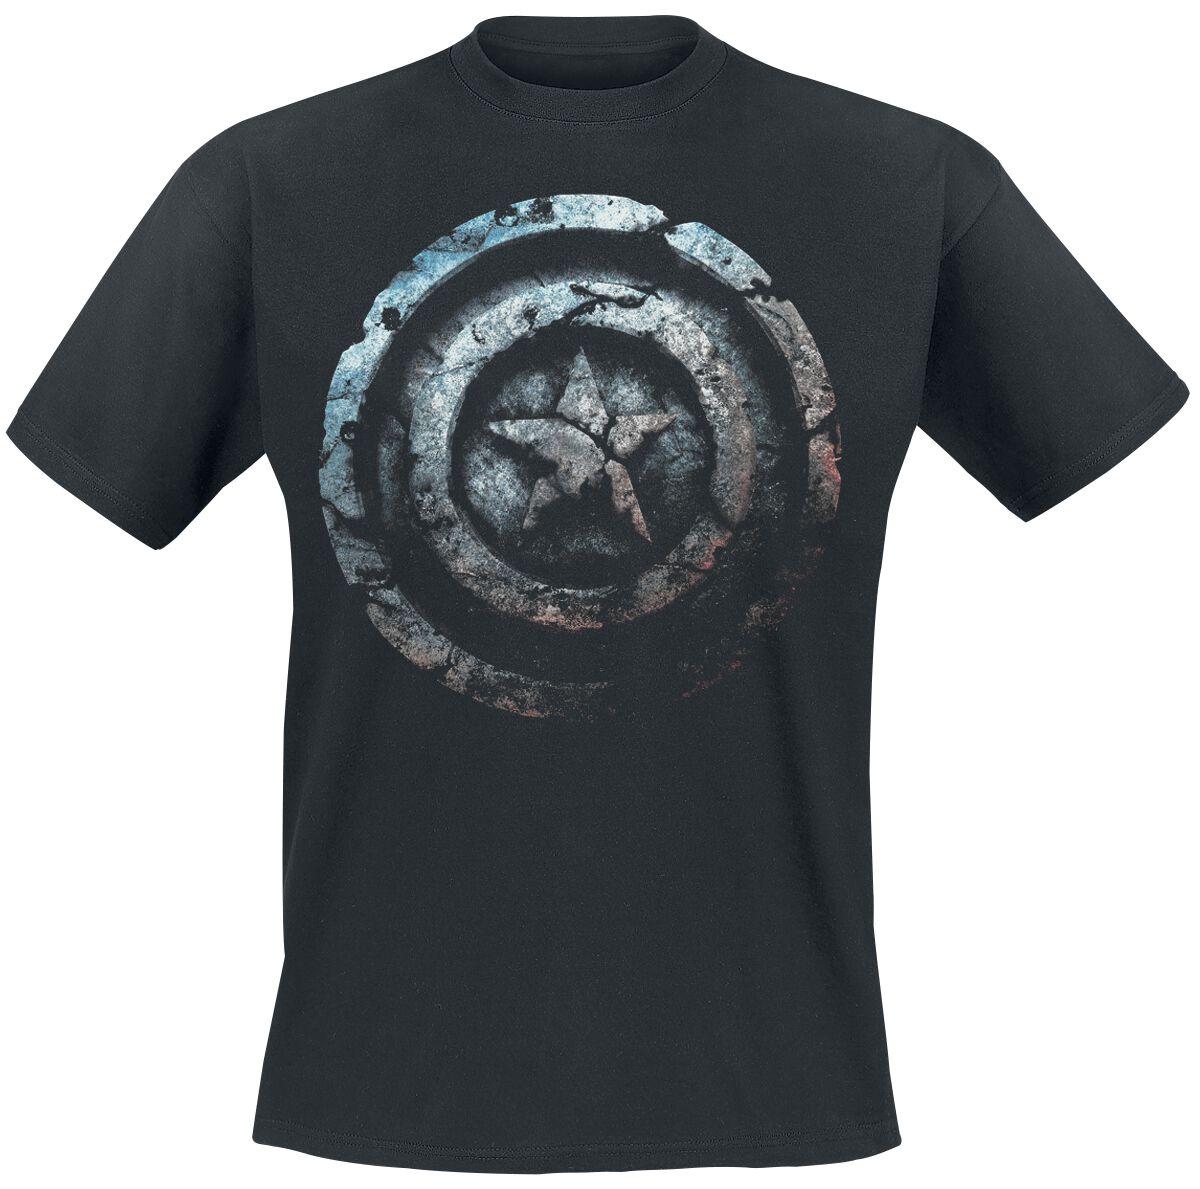 Captain America - Marvel T-Shirt - Stone Shield - S bis 4XL - für Männer - Größe 3XL - schwarz  - EMP exklusives Merchandise!